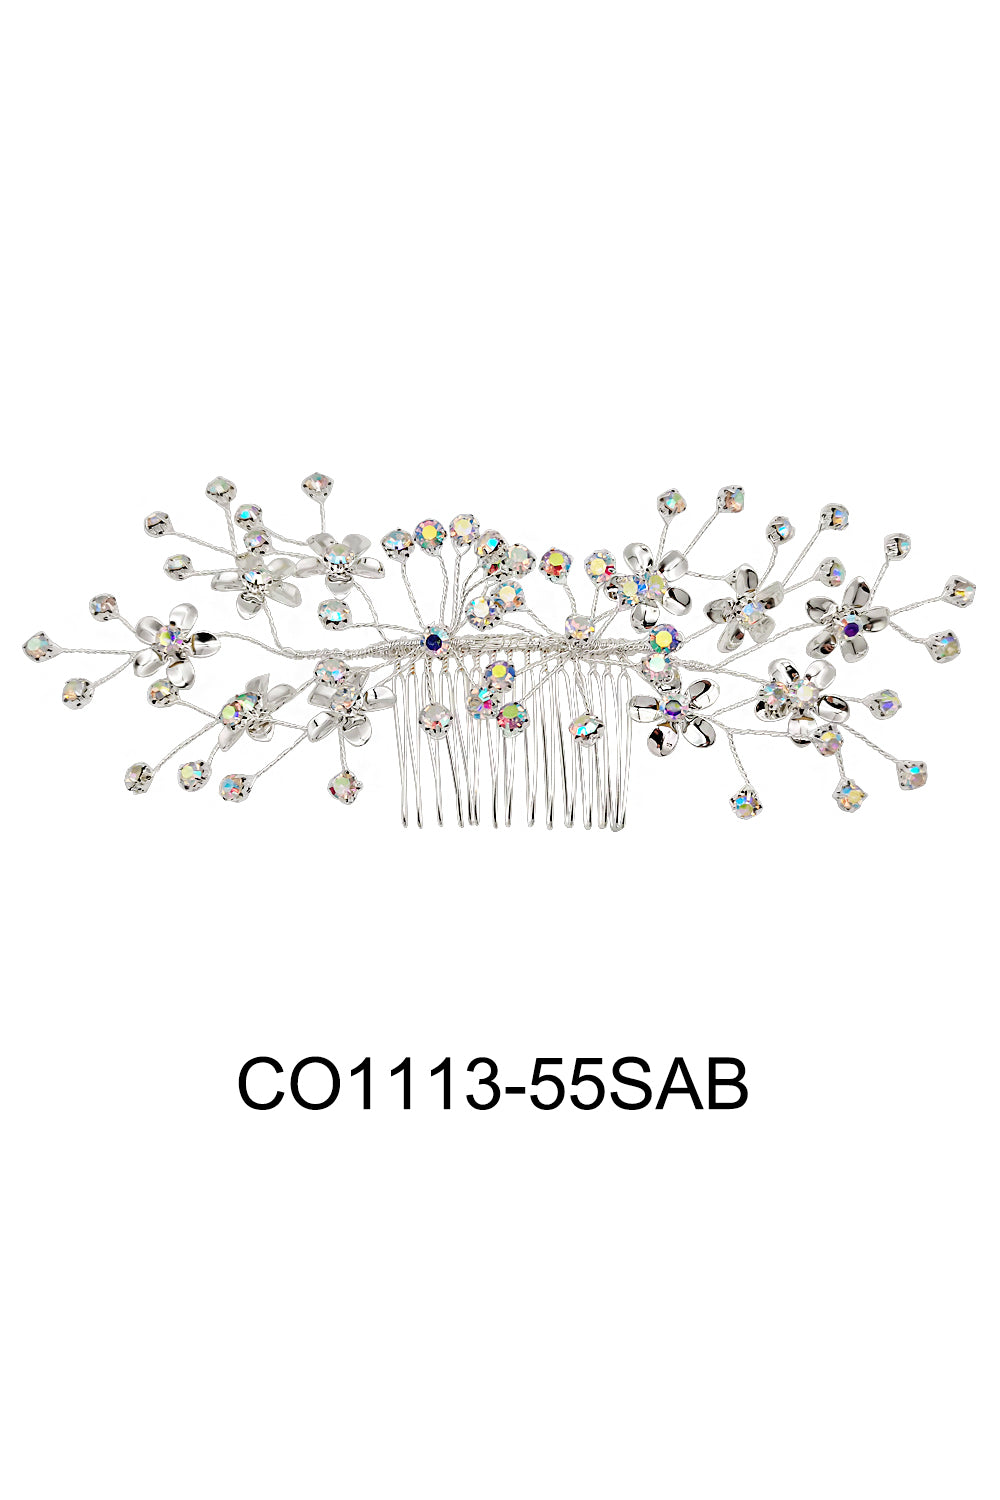 CO1113-55SAB (6PC)